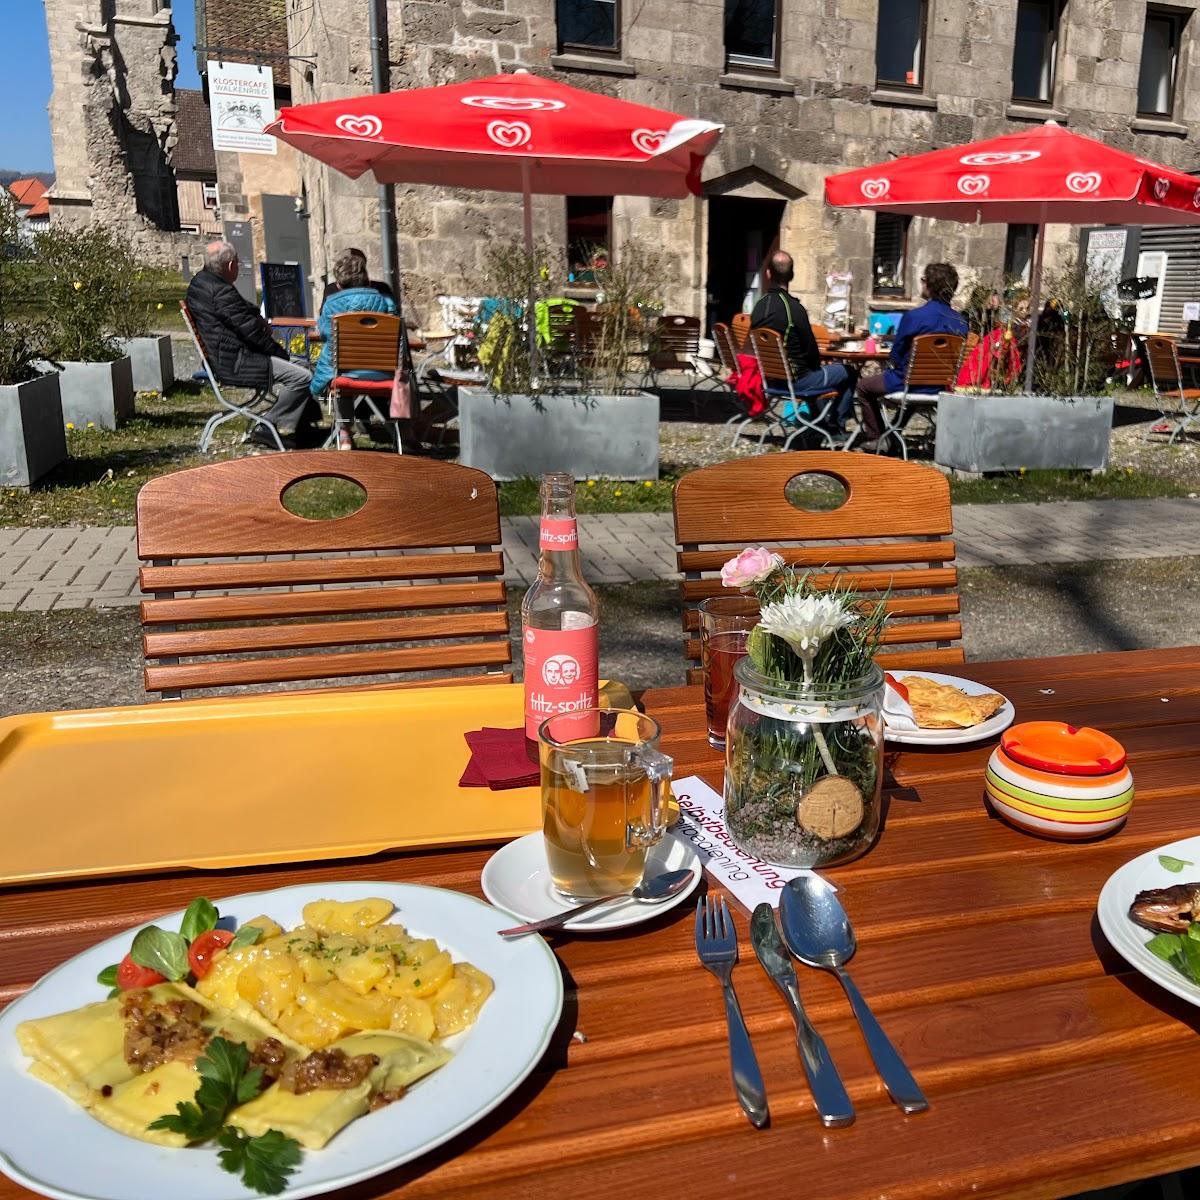 Restaurant "Klostercafé" in Walkenried